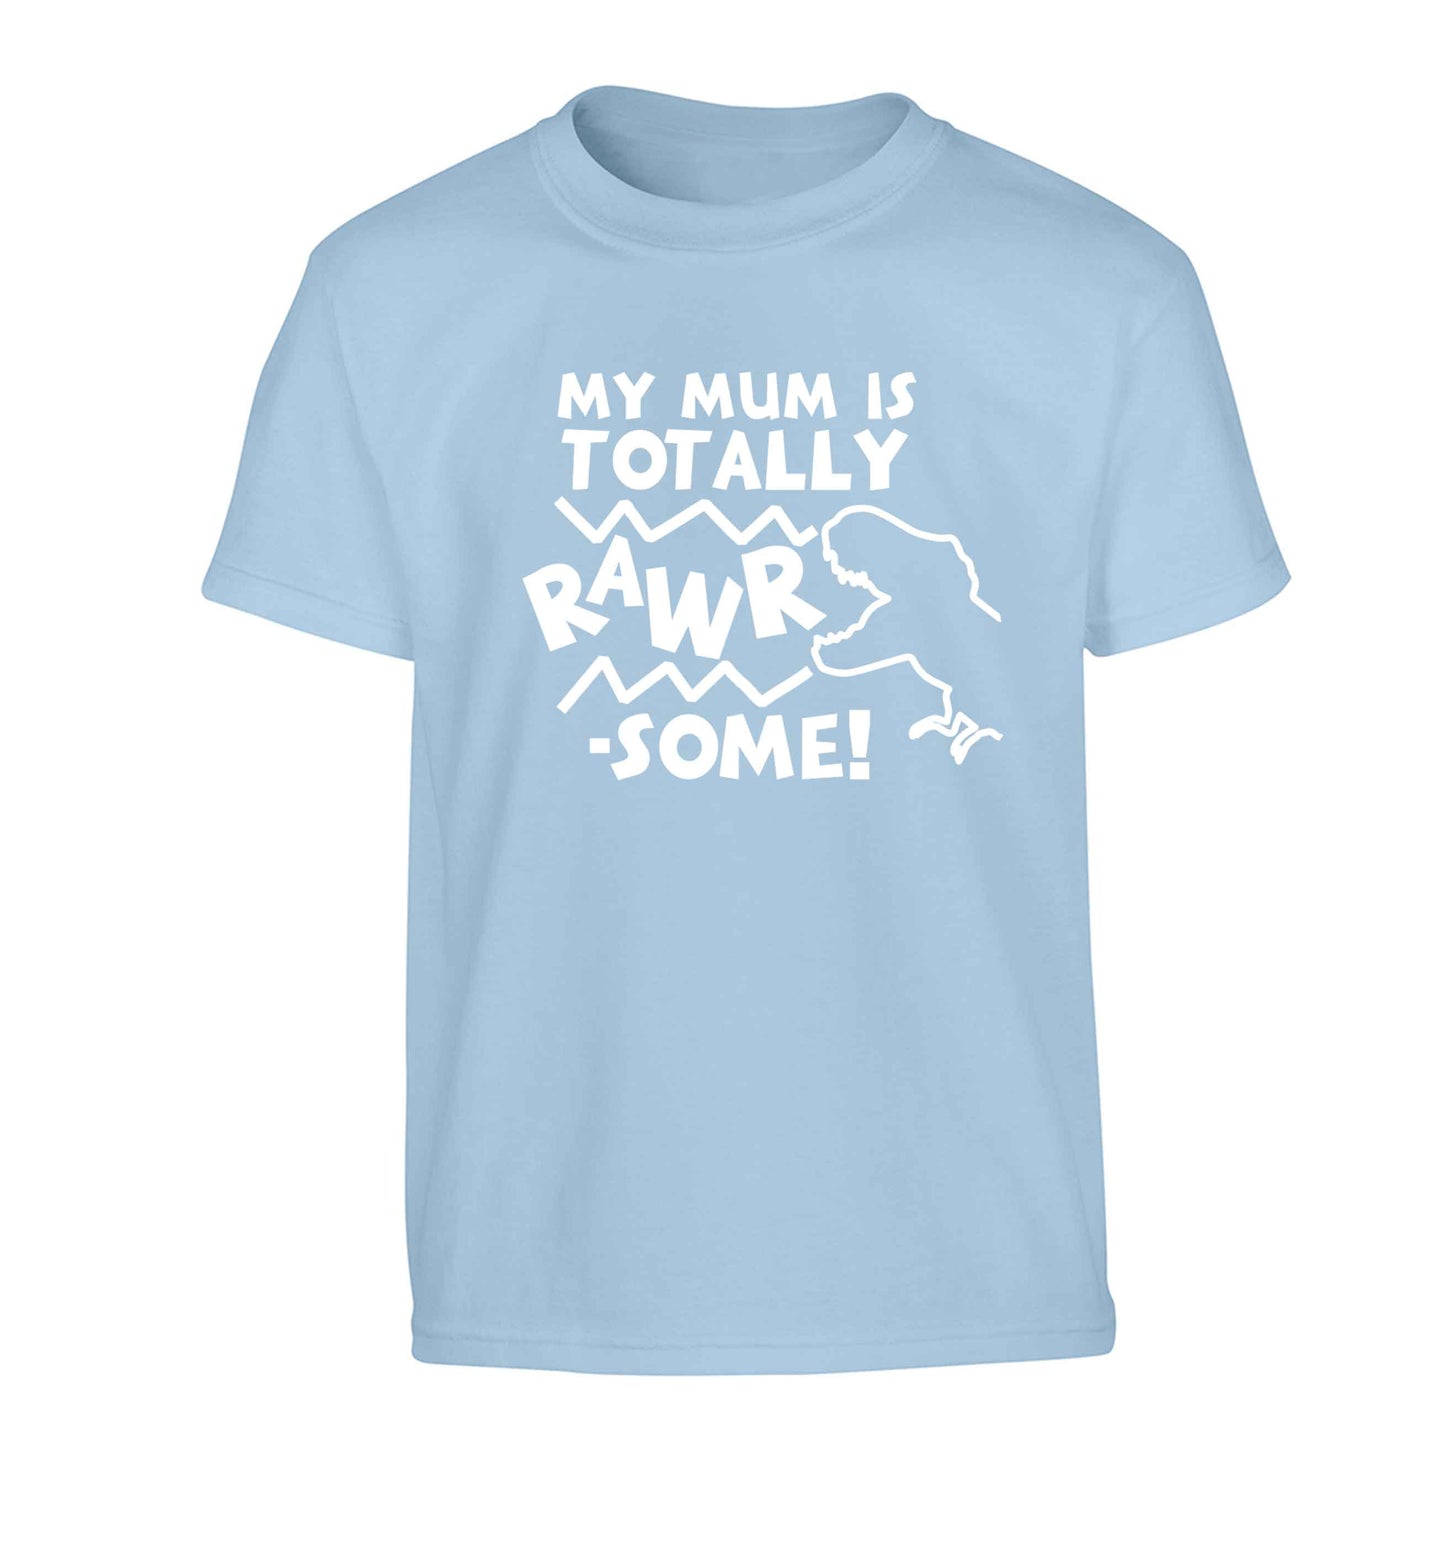 My mum is totally rawrsome Children's light blue Tshirt 12-13 Years